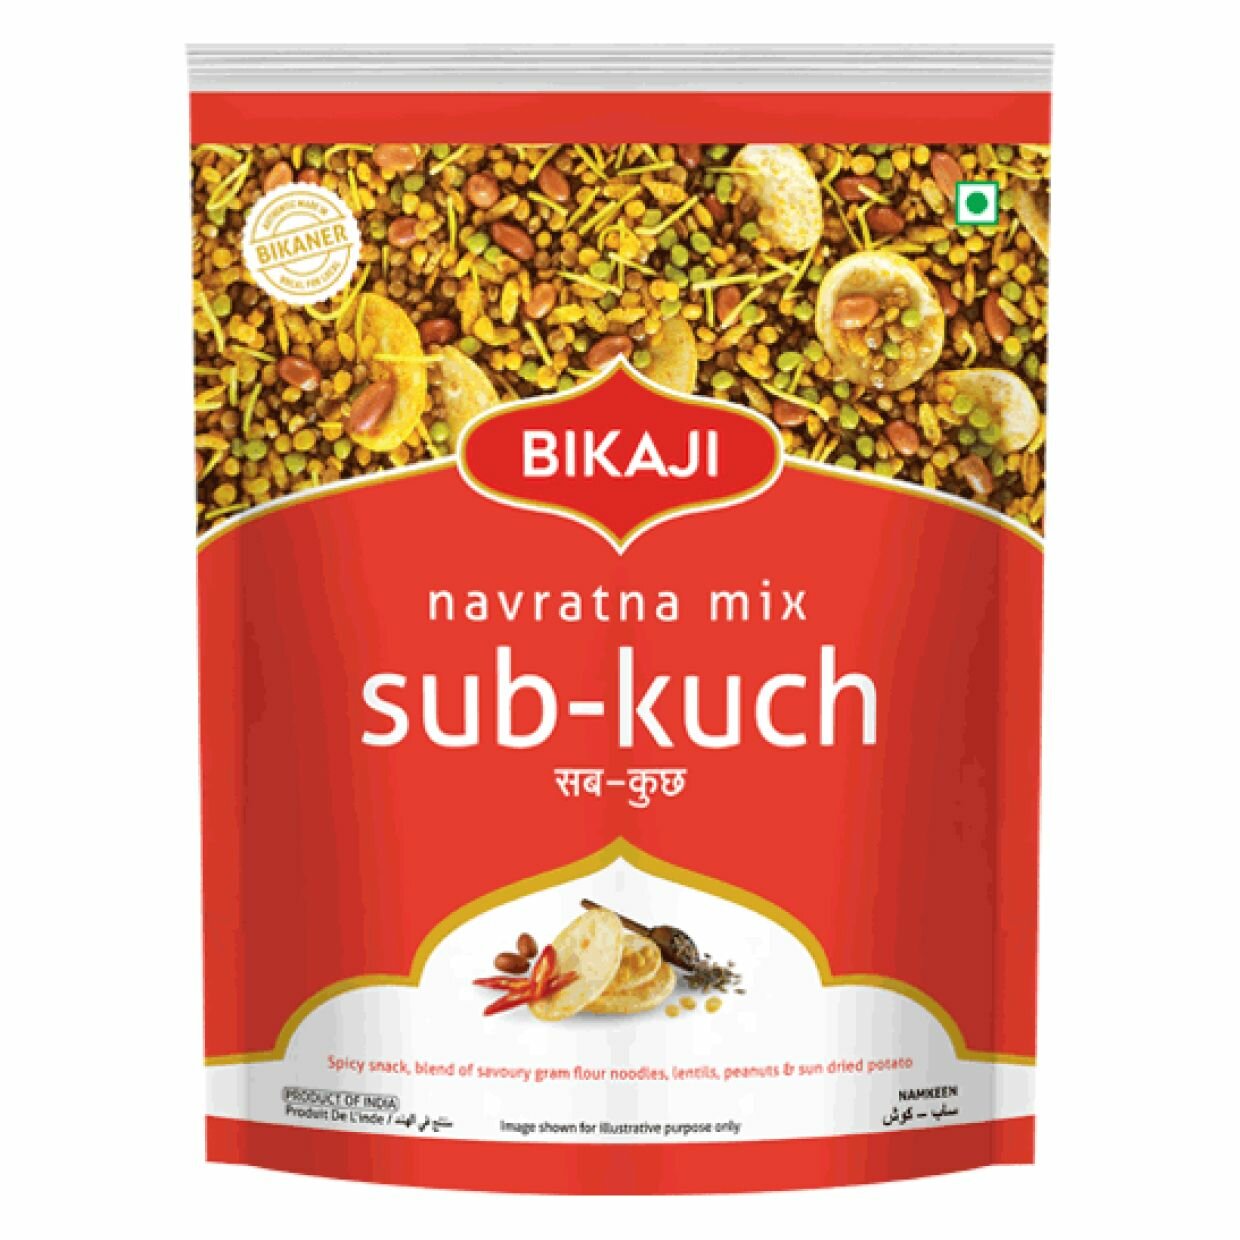 Закуска индийская Bikaji Навратан мих, хрустящие снеки с насыщенным остро-пряным вкусом, Navratna Mix Sub-Kuch, 200 г